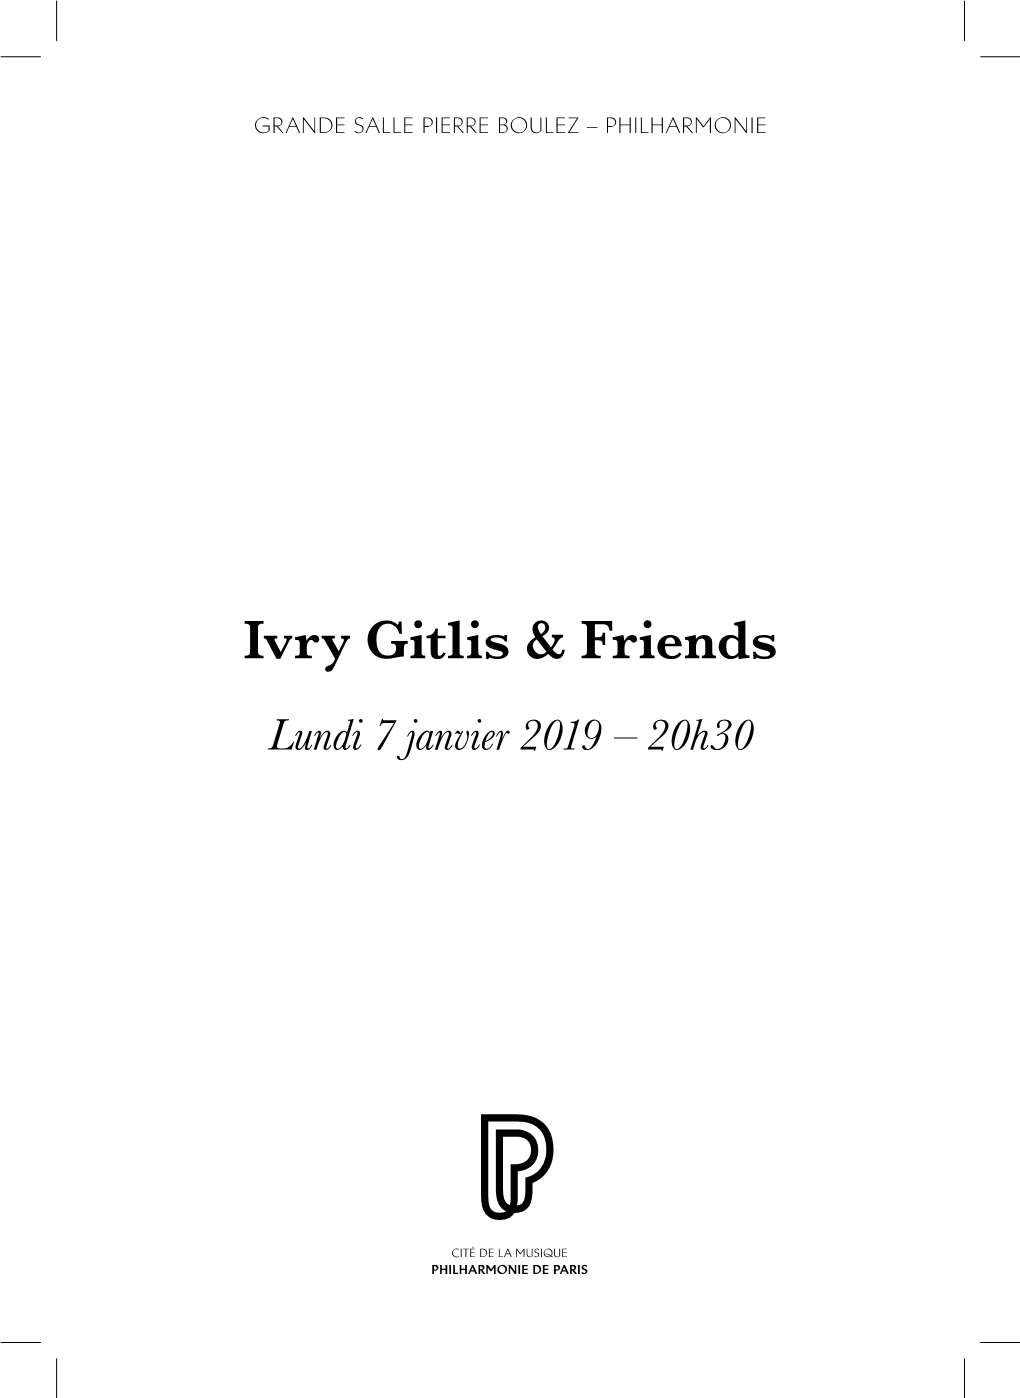 Ivry Gitlis & Friends